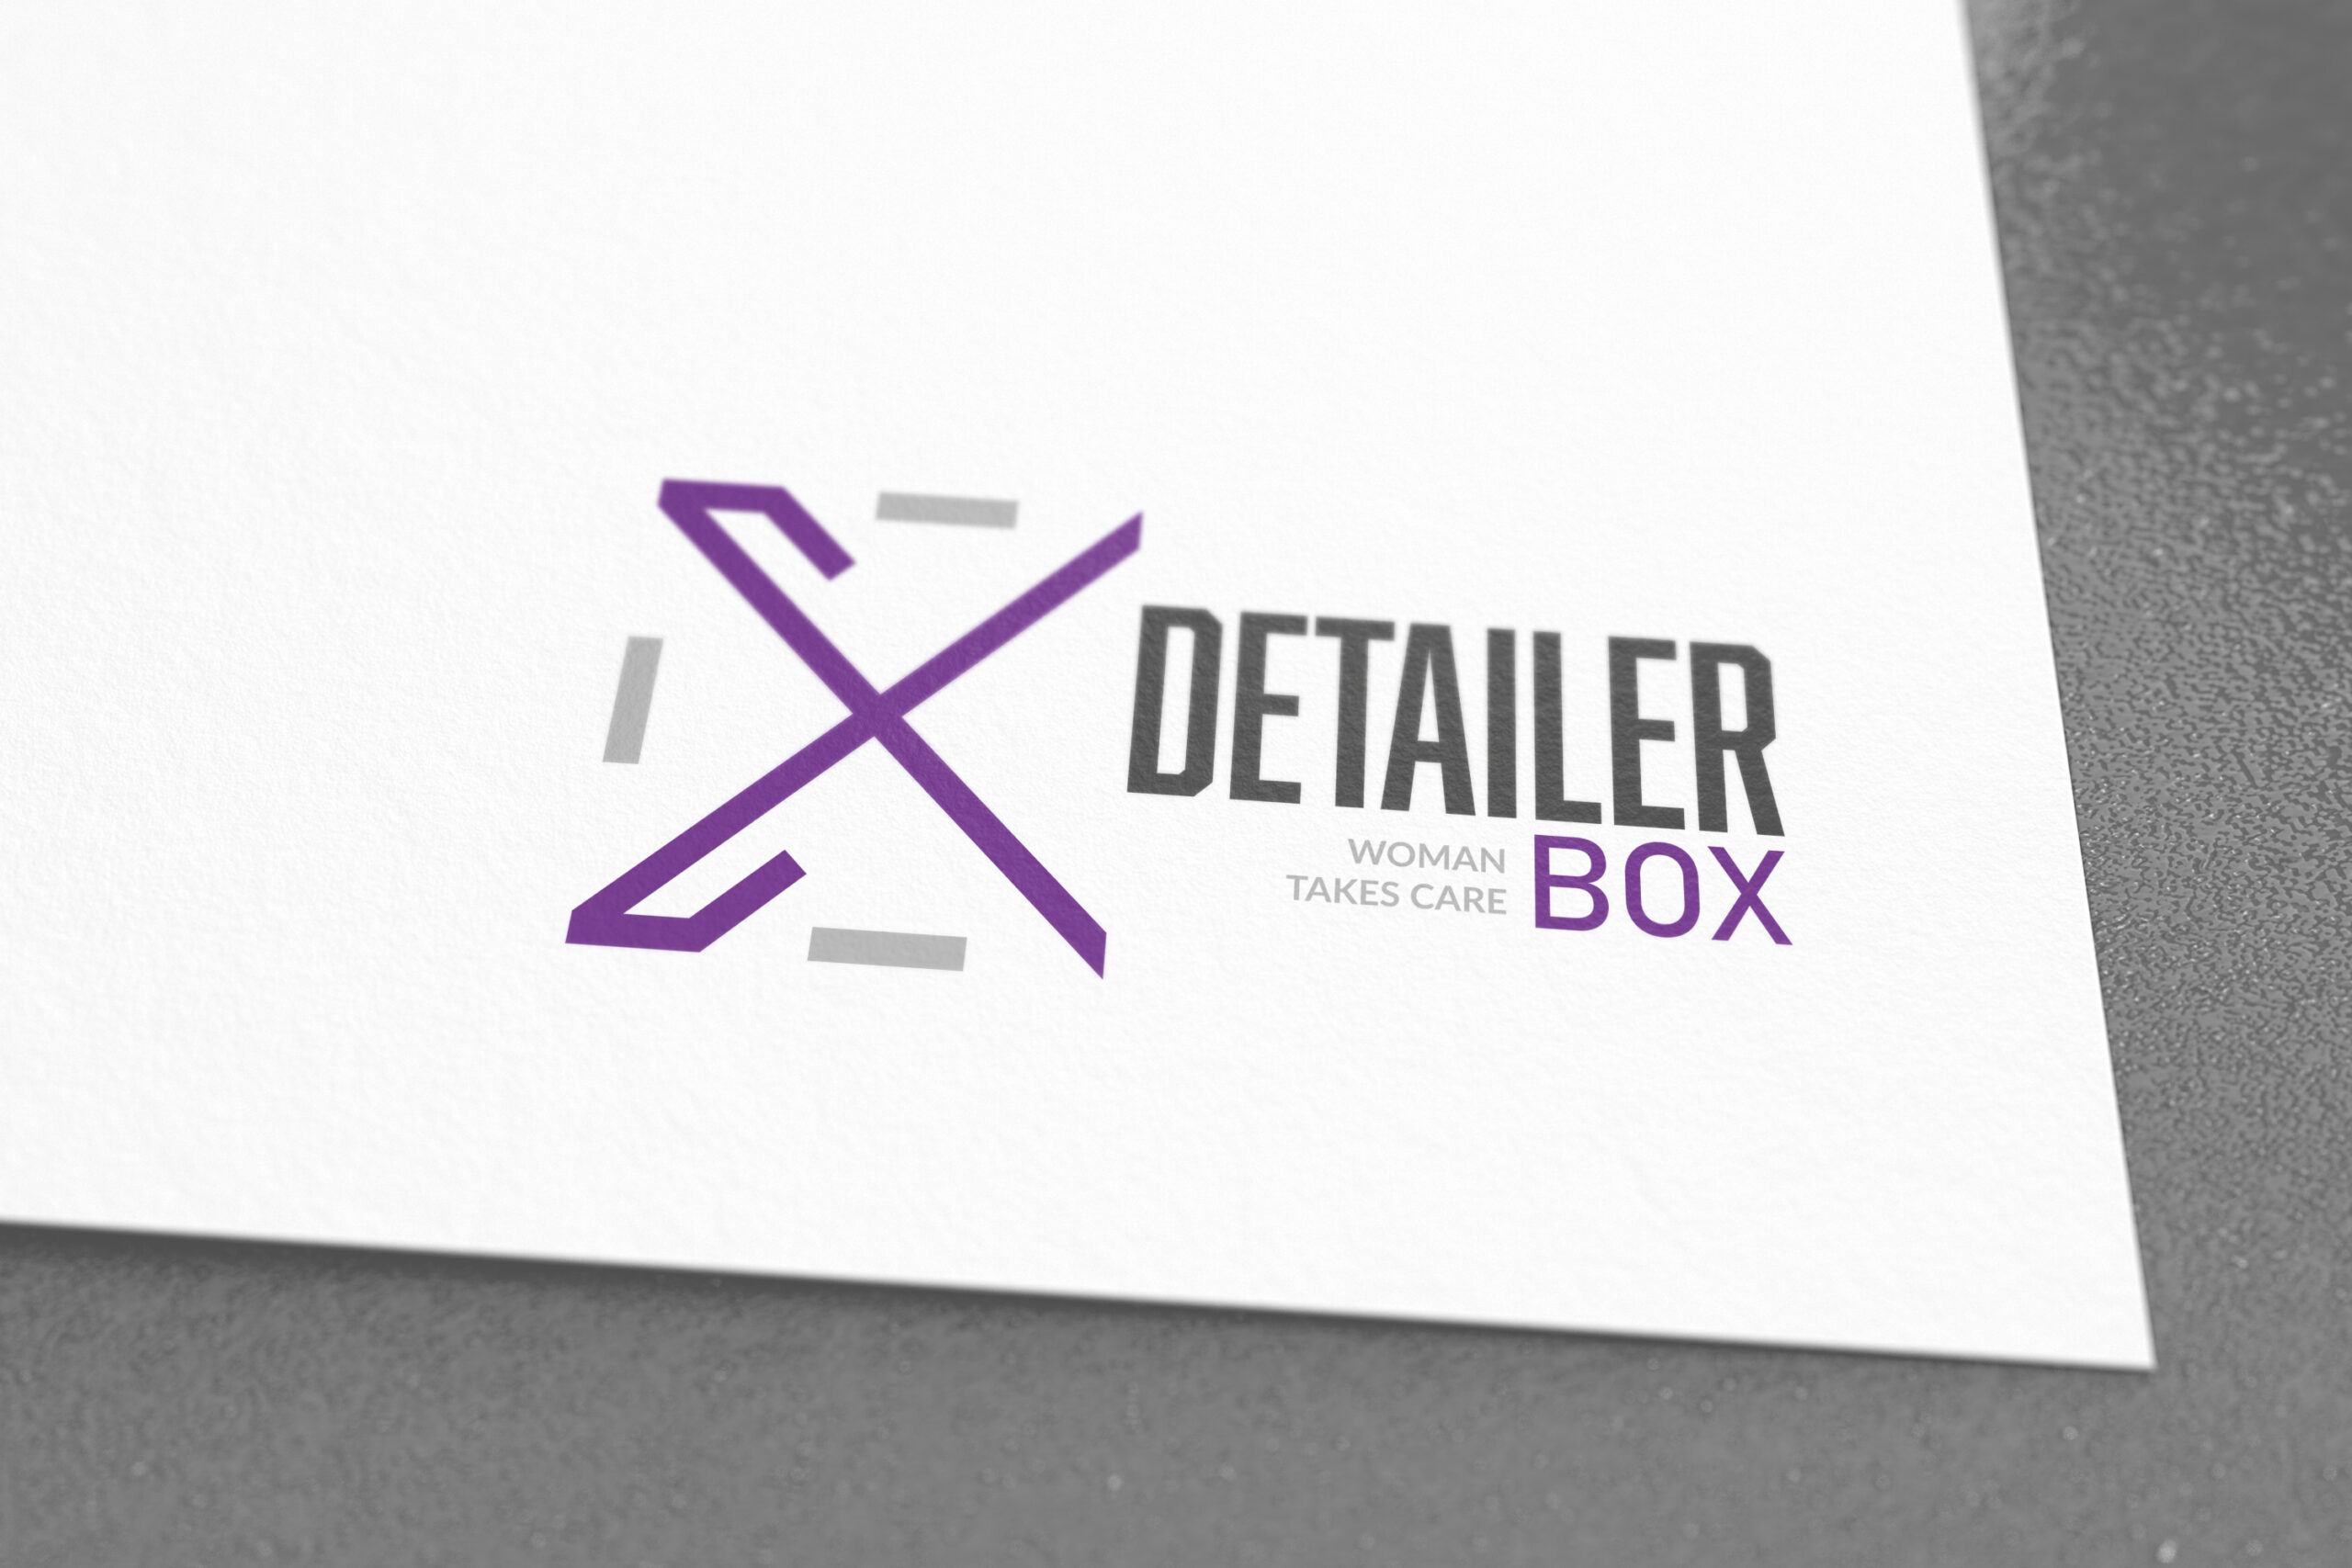 X-Detailer Box